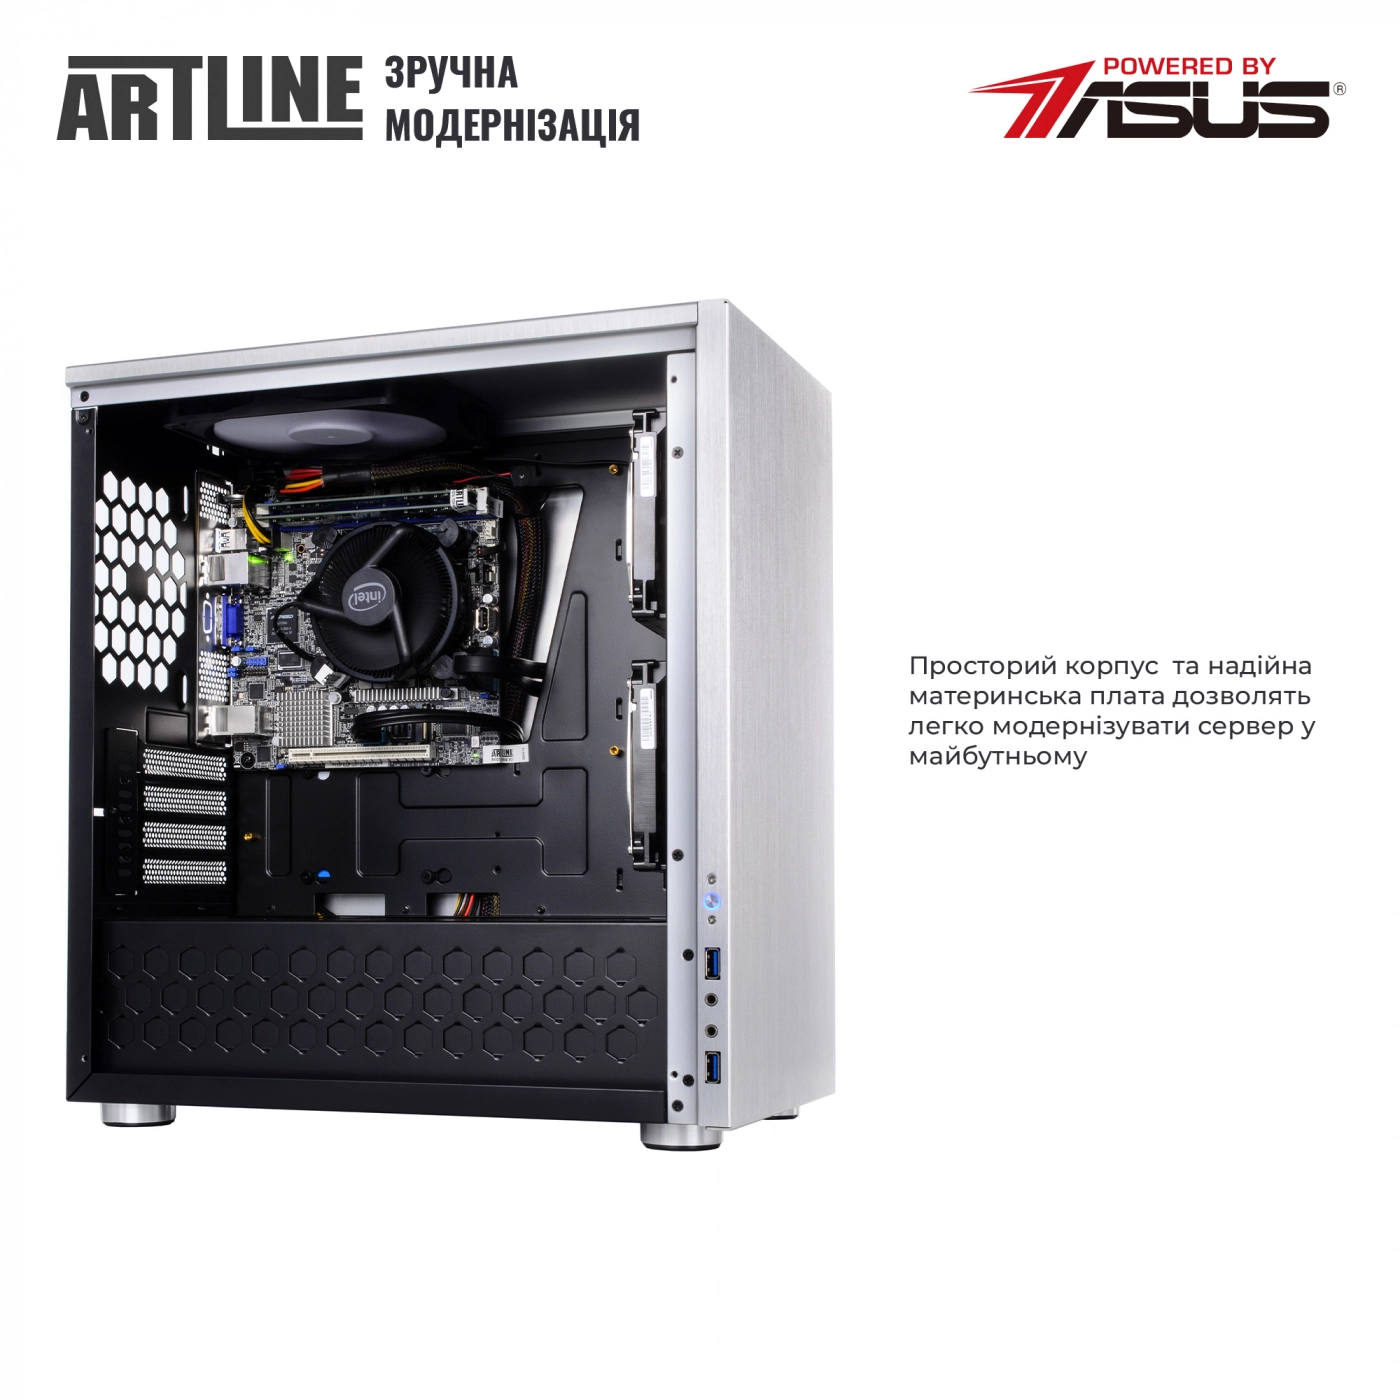 Купить Сервер ARTLINE Business T21v04 - фото 8